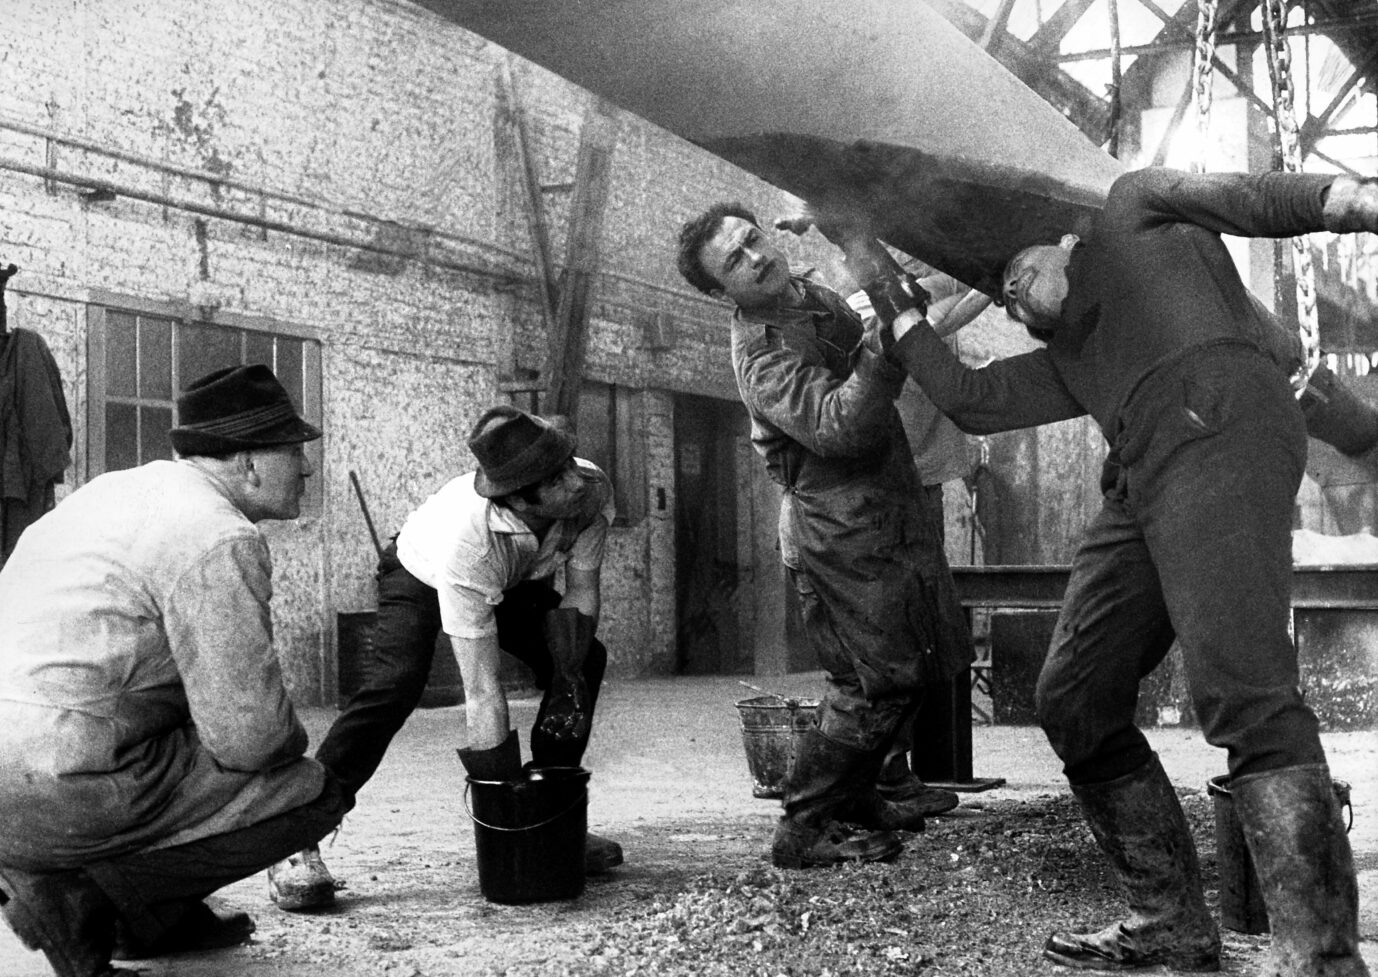 Gastarbeiter aus Griechenland, der Türkei und Spanien im Jahr 1966 bei der Arbeit in einer Großverzinkerei in Berlin